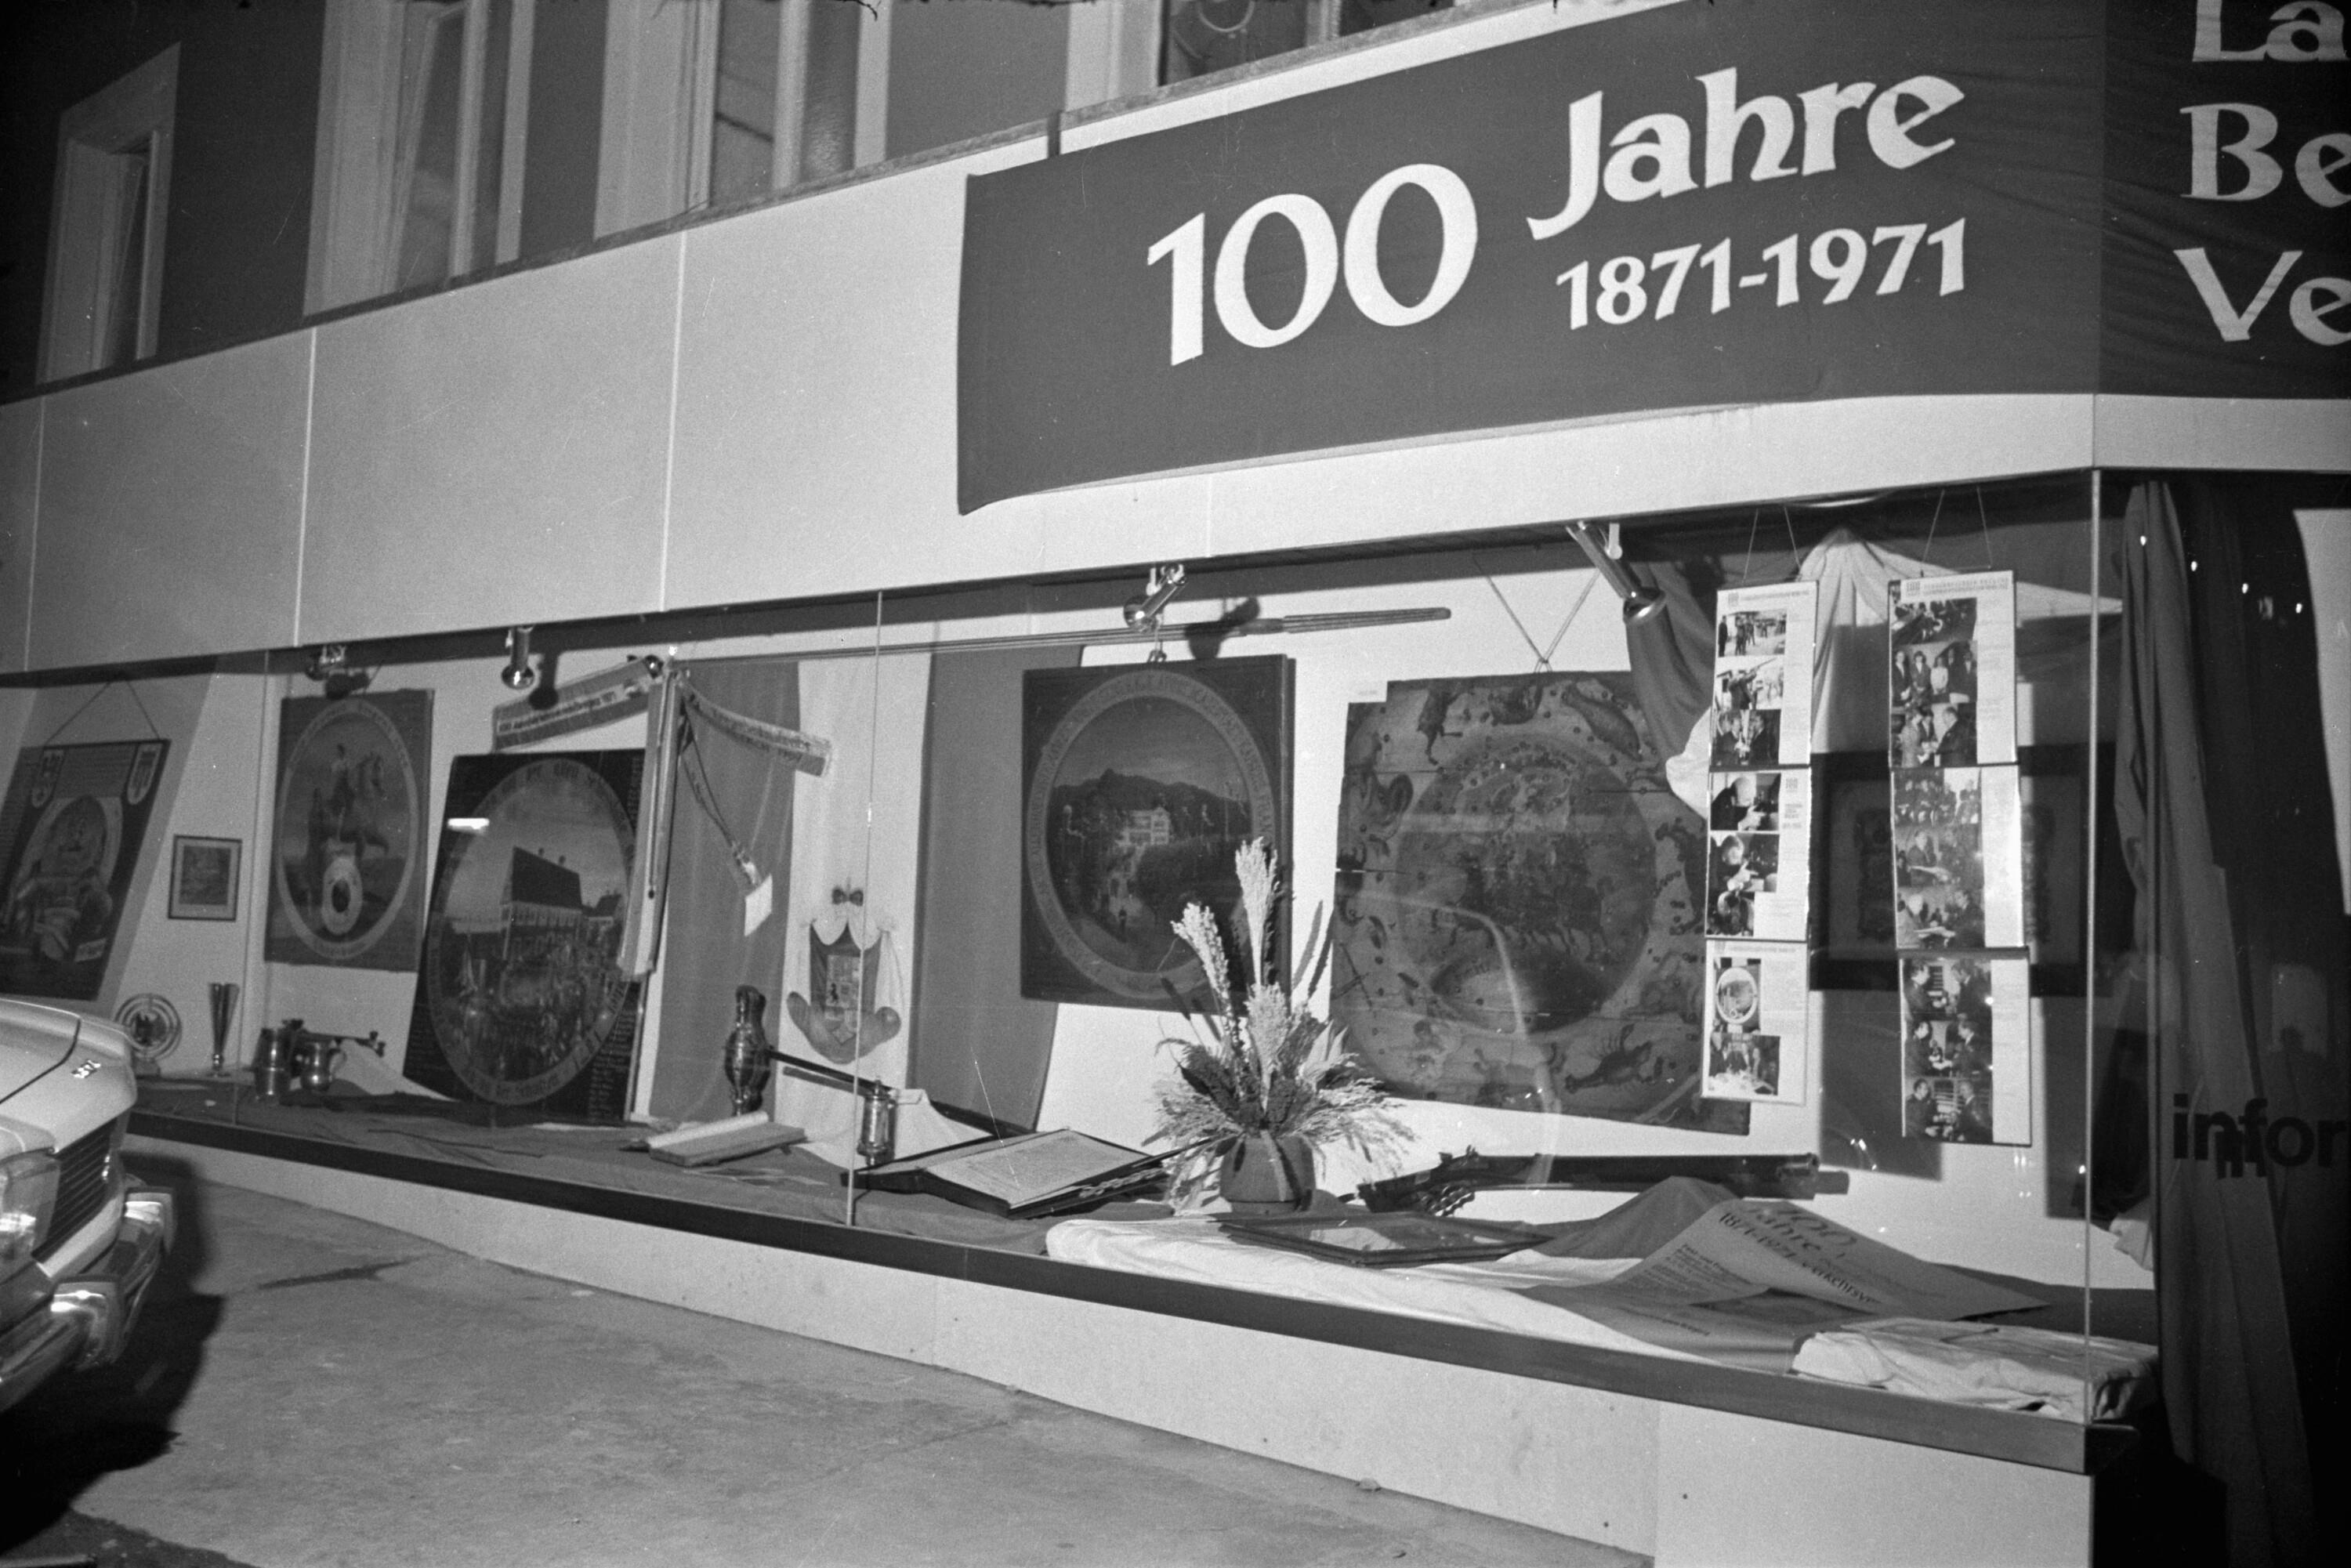 100 Jahre Verkehrsverein in Bregenz - Ausstellung></div>


    <hr>
    <div class=